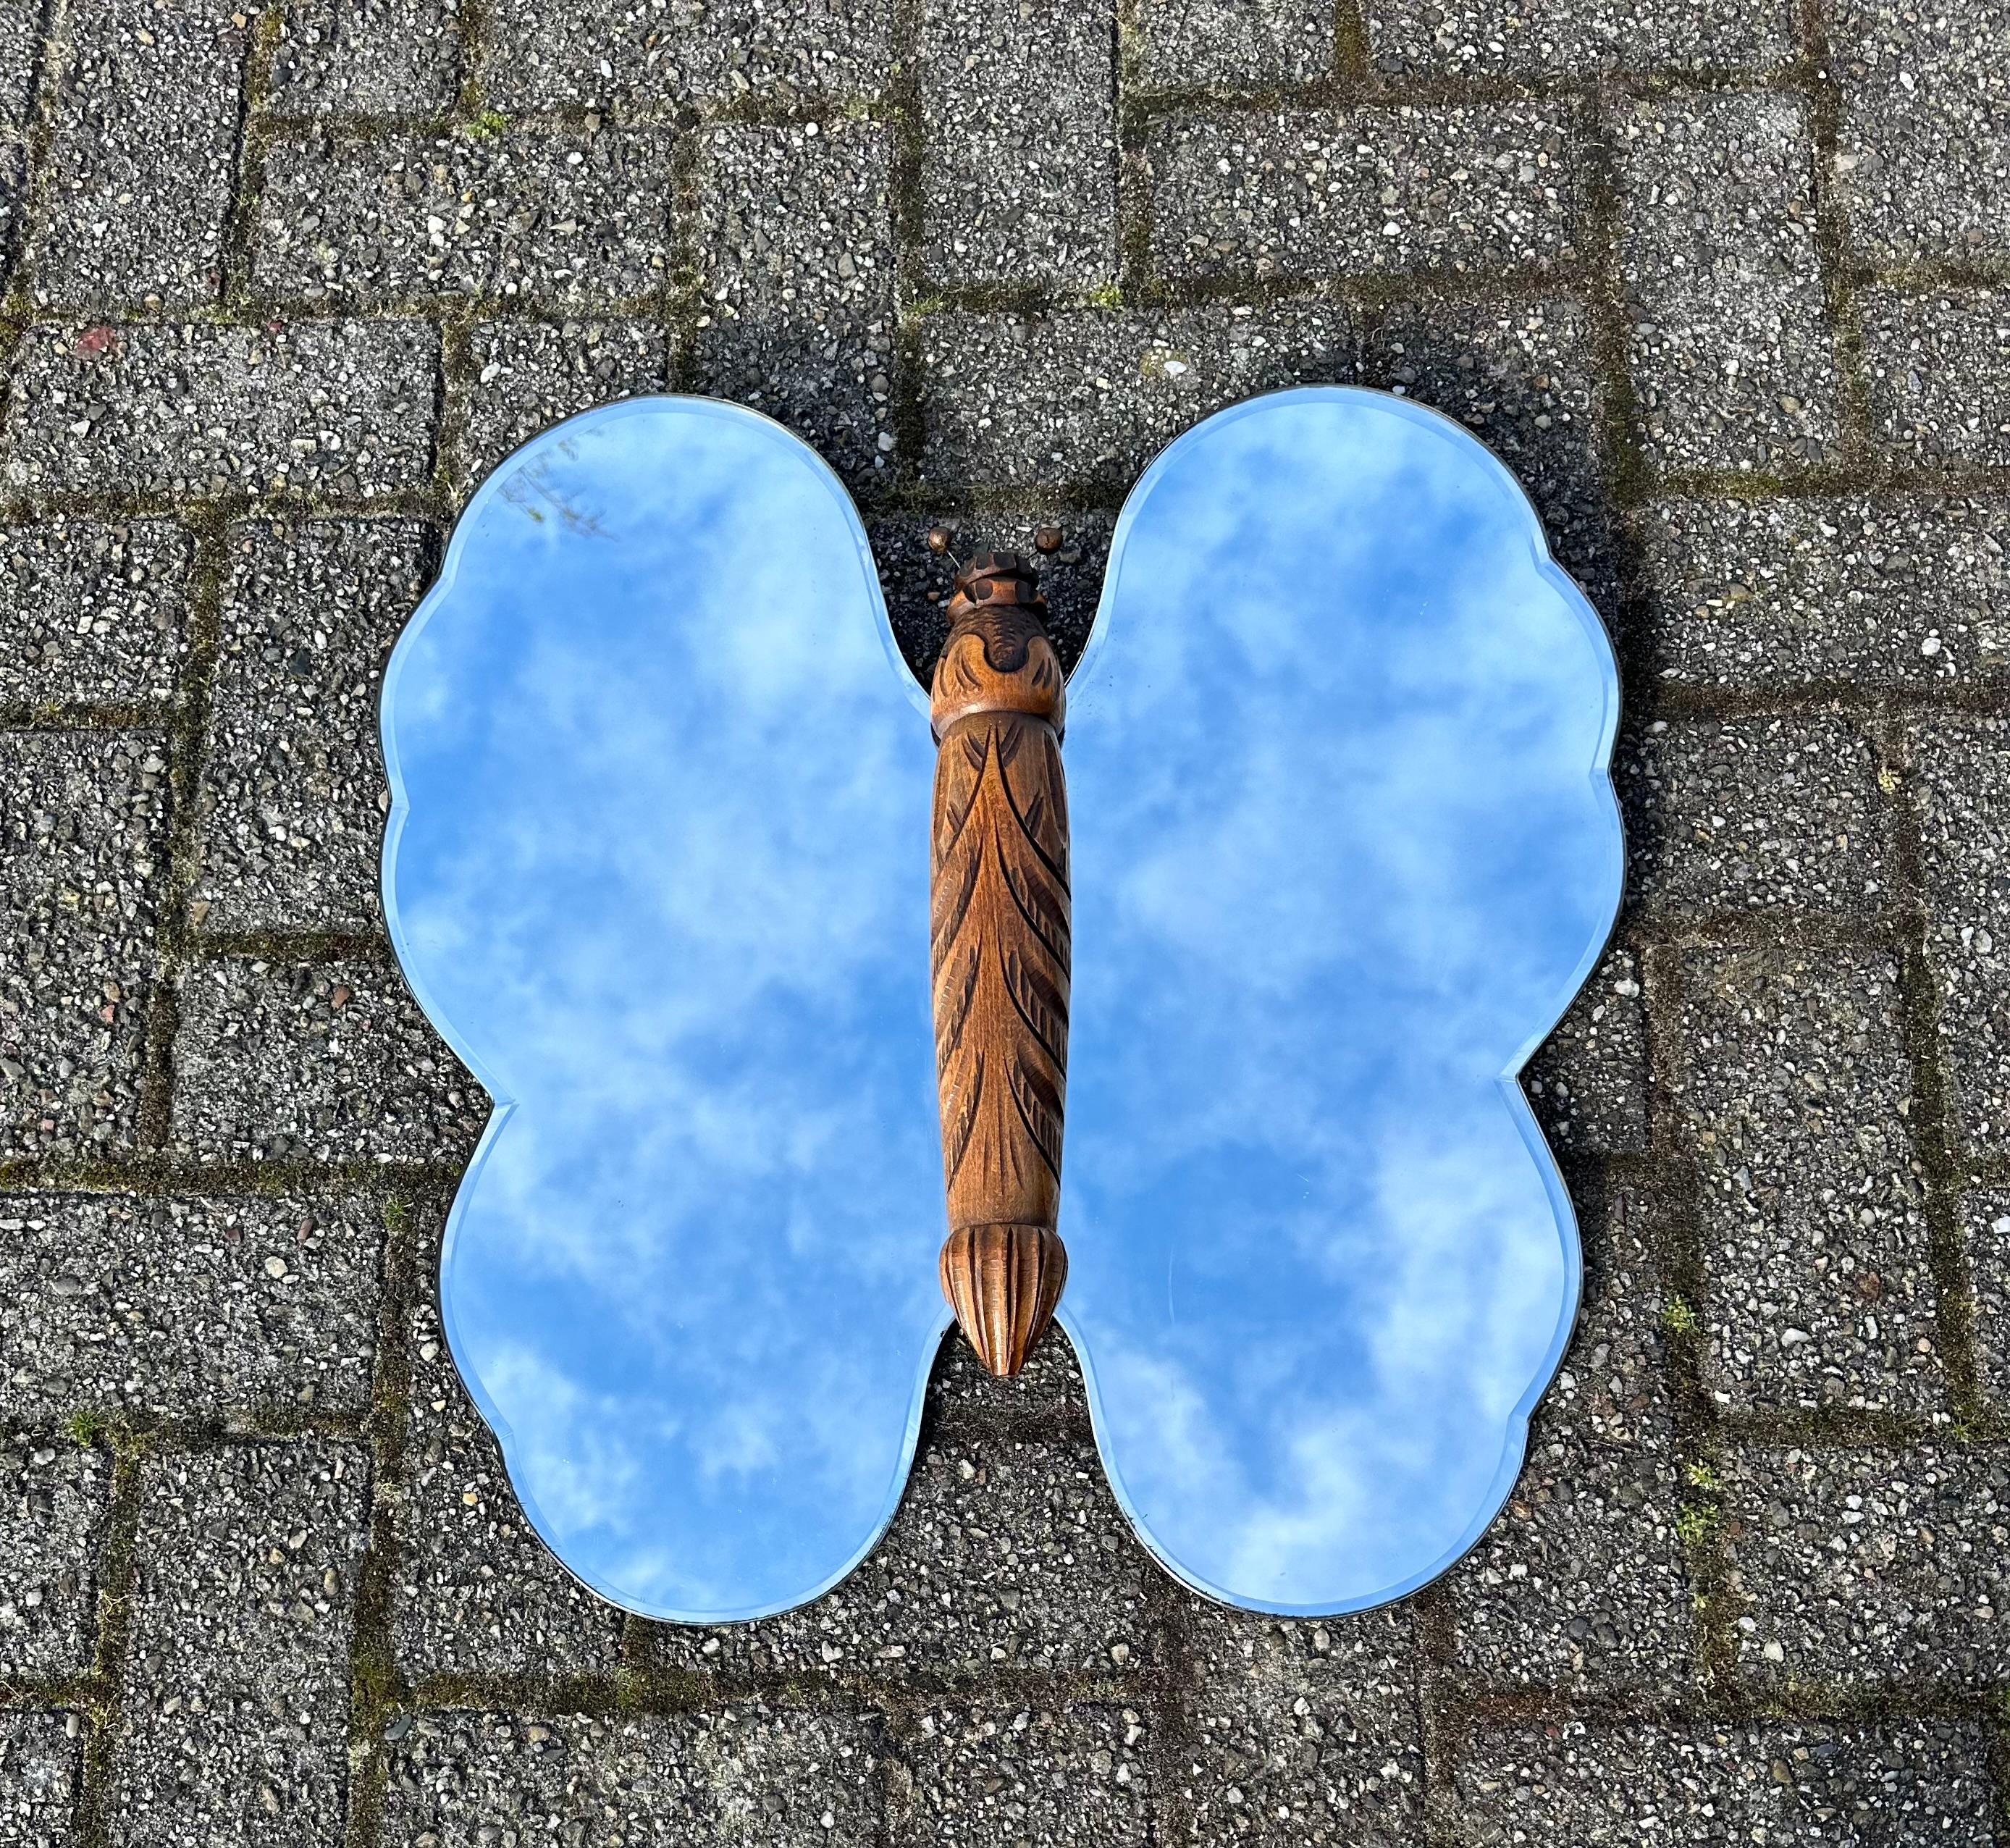 Auffälliger Schmetterlings-Wandspiegel mit einem Korpus aus Buche und dicken, abgeschrägten Glasflügeln.

Wenn Sie Schmetterlinge lieben und/oder wenn sie in Ihrem Leben eine Rolle spielen, dann könnte dieser wunderbare Wandspiegel bald in Ihre